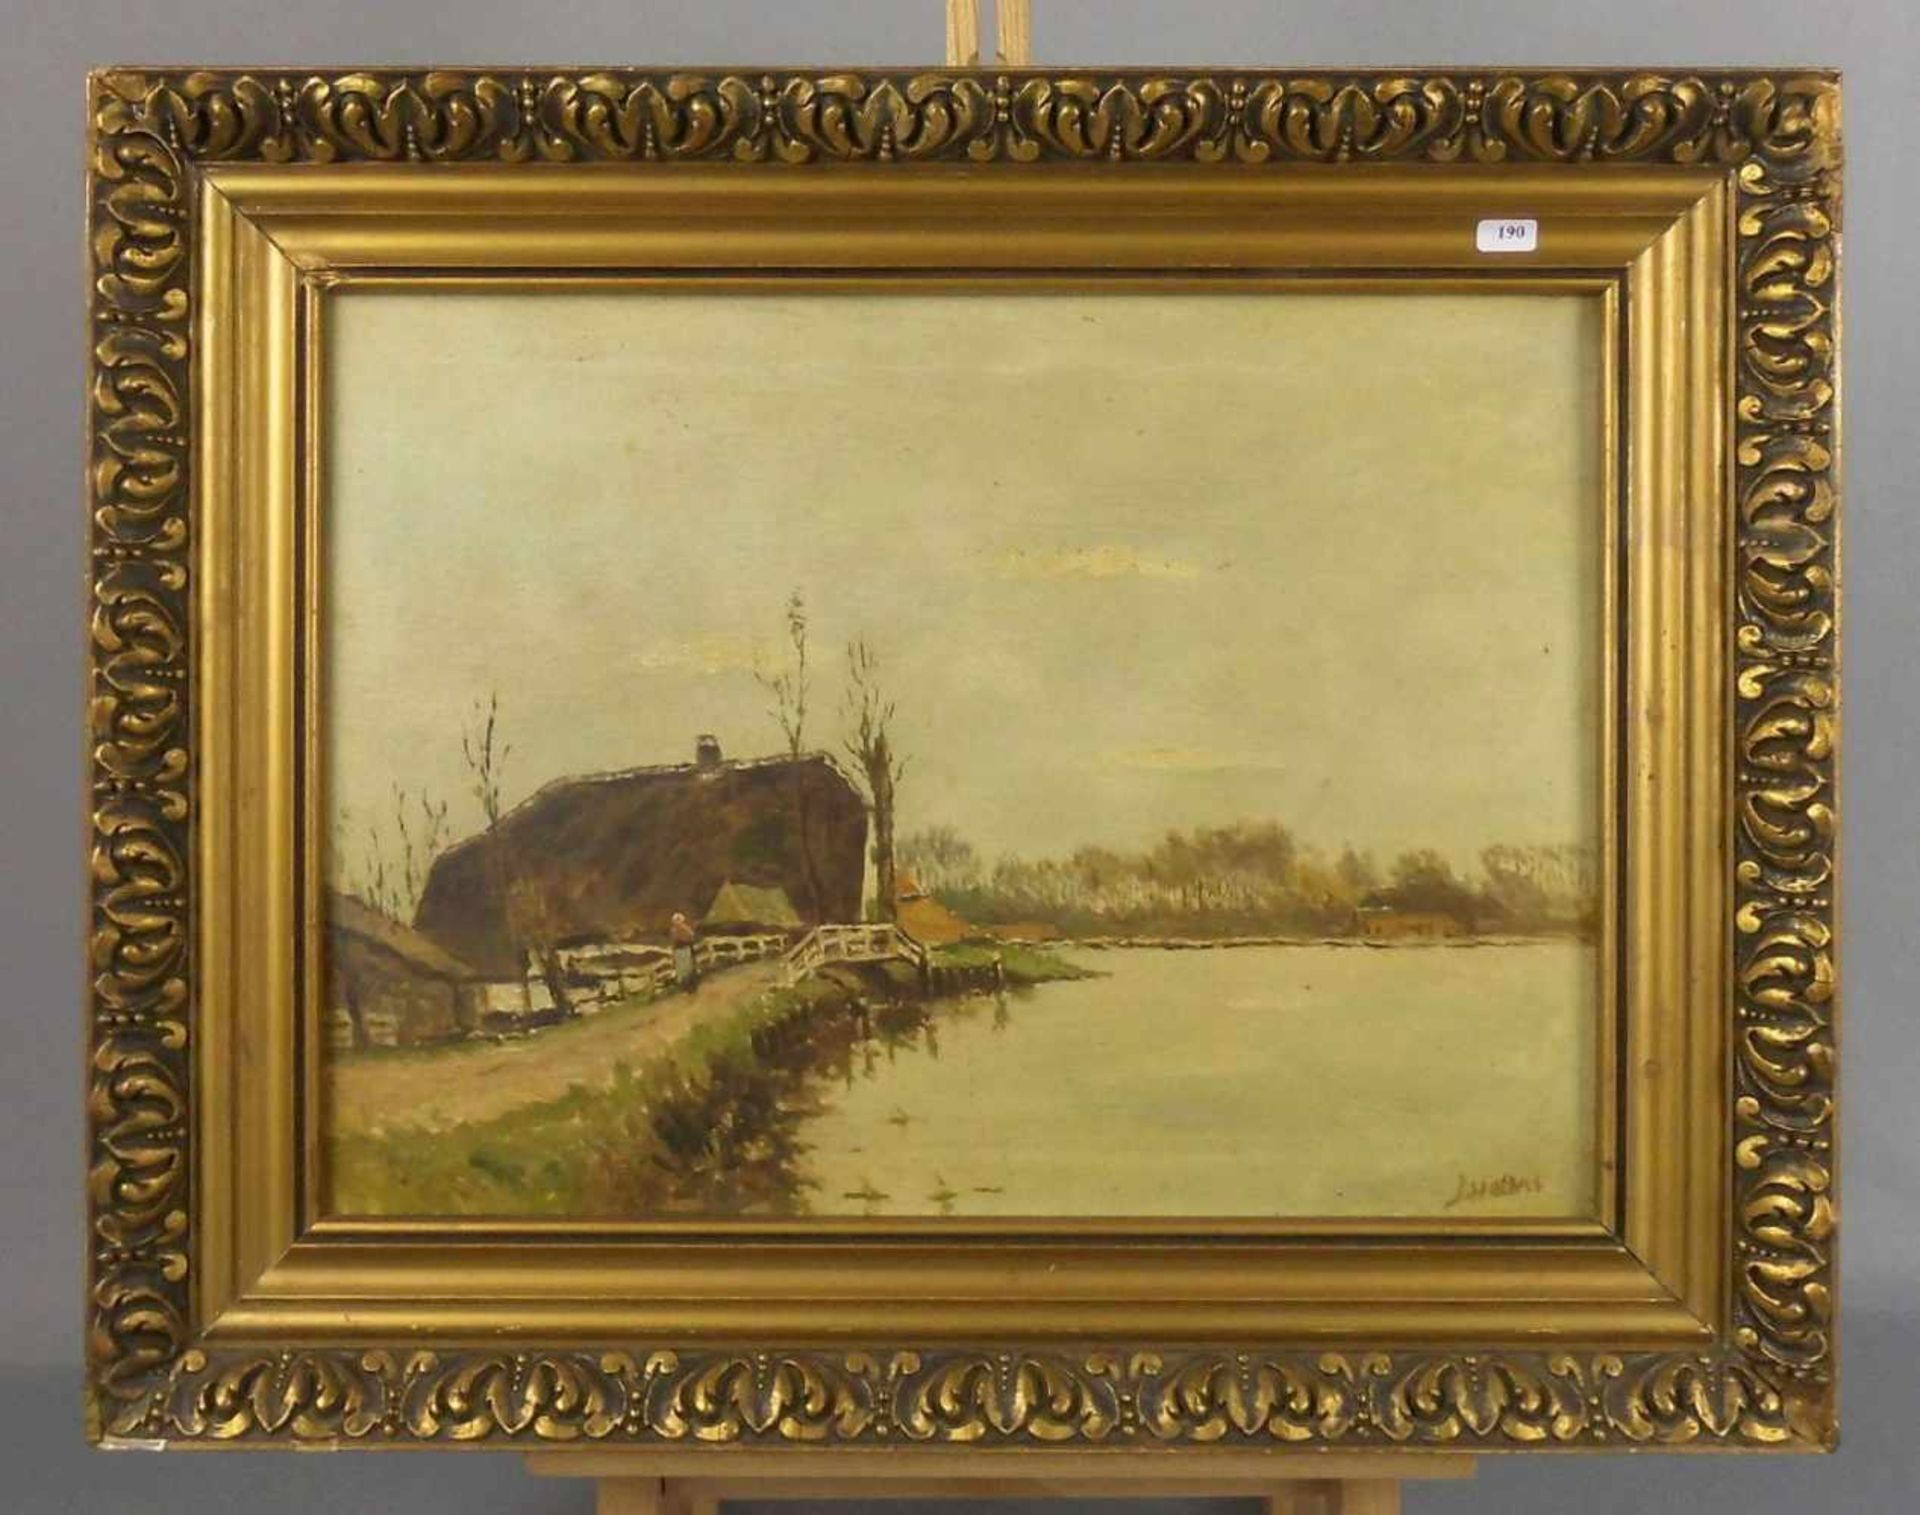 GEMÄLDE / painting: "Friesisches Gulfhaus am Gewässer", Öl auf Leinwand / oil on canvas, um 1900, u.